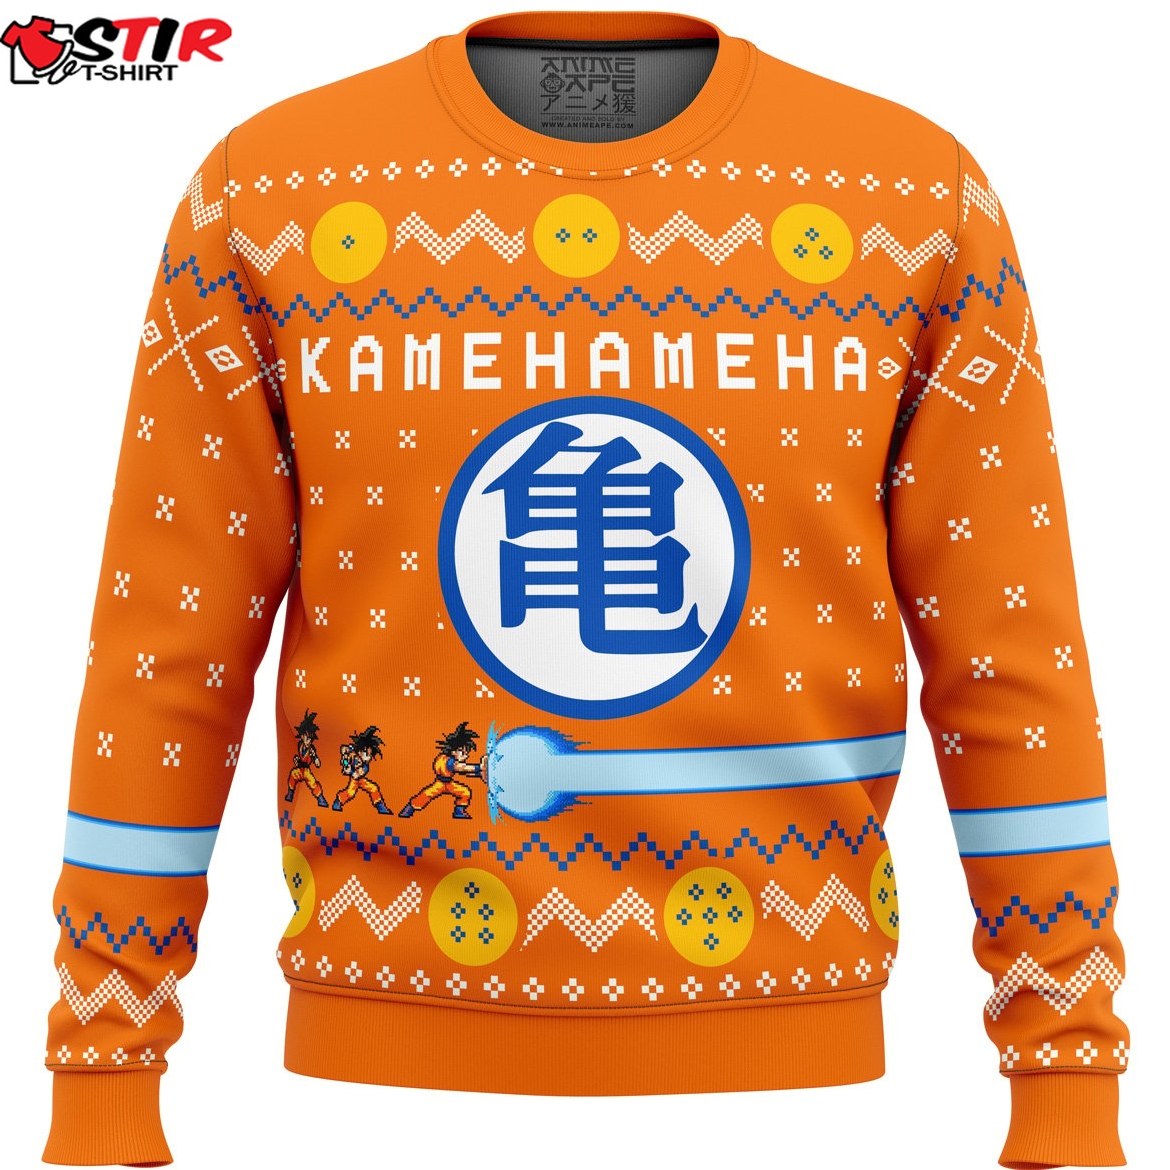 Dragon Ball Z Kamehameha Ugly Christmas Sweater Stirtshirt